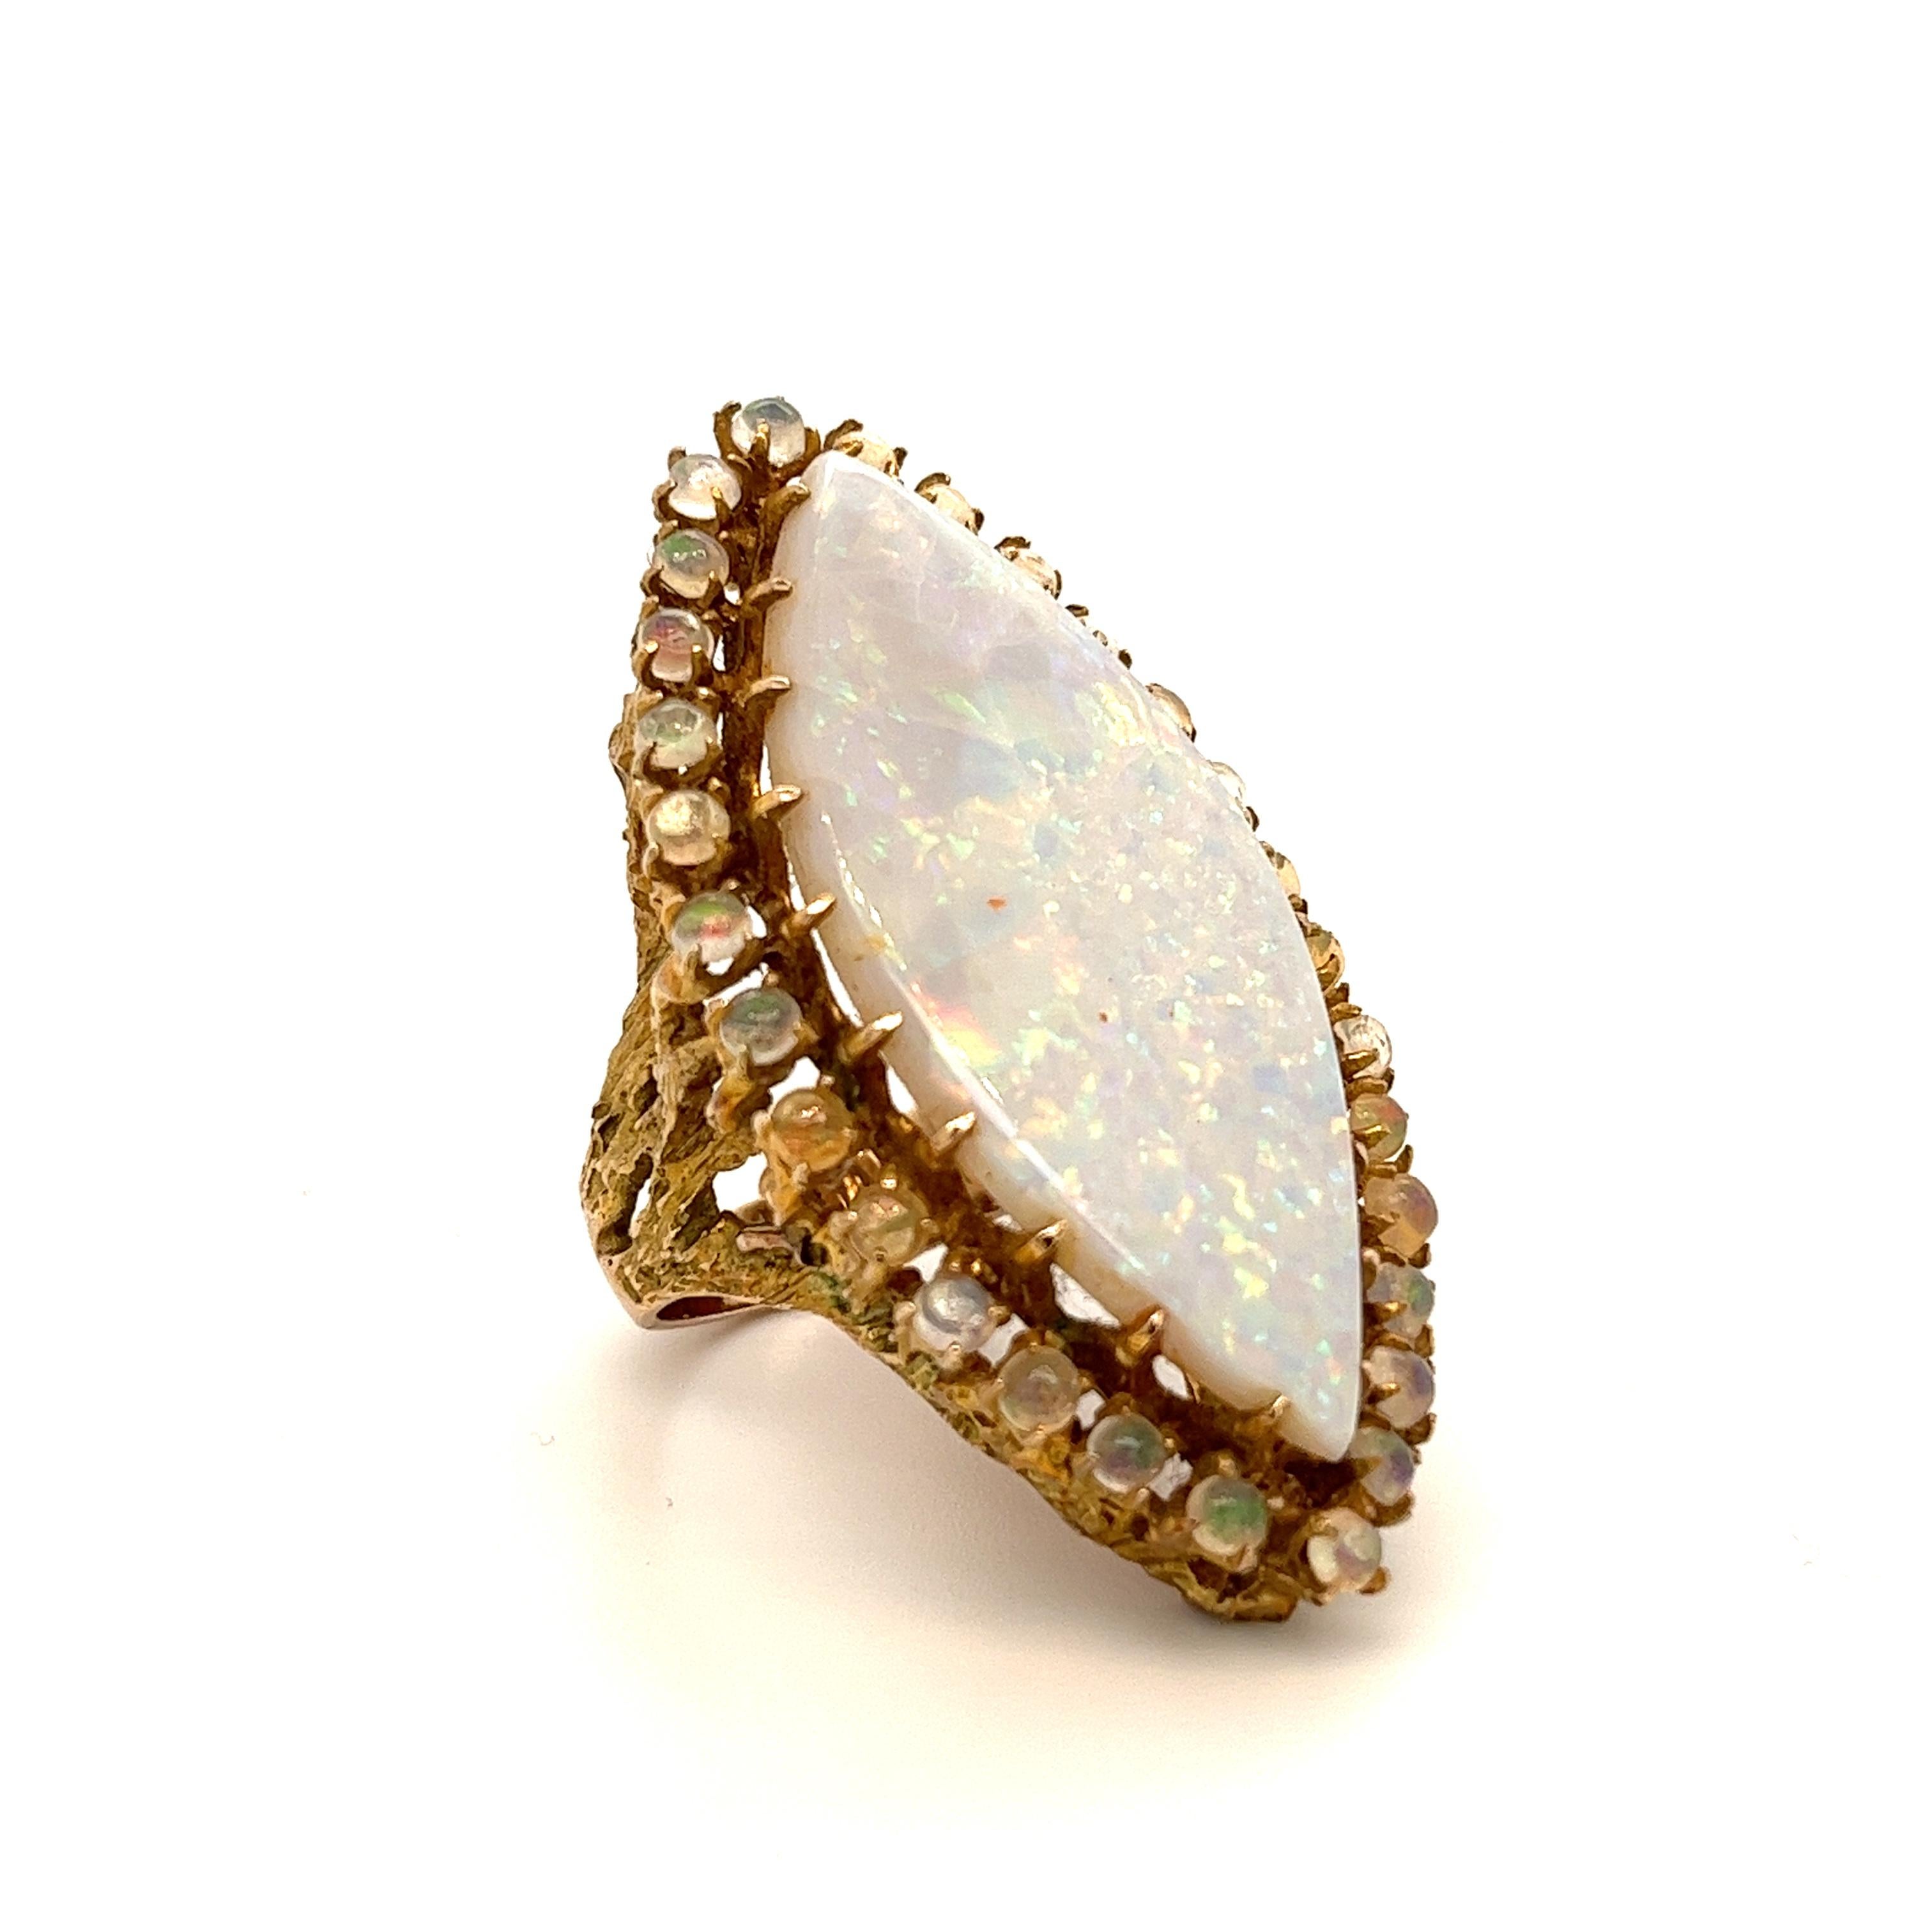 Natürlicher weißer Opal in Marquiseform, eingefasst in einen Kranz von 30 kugelförmigen Opal-Edelsteinen. Die Opale sind in 14k massivem Gelbgold gefasst. Die Ringfassung ist in einem baumähnlichen Design handgefertigt, das nach oben in die